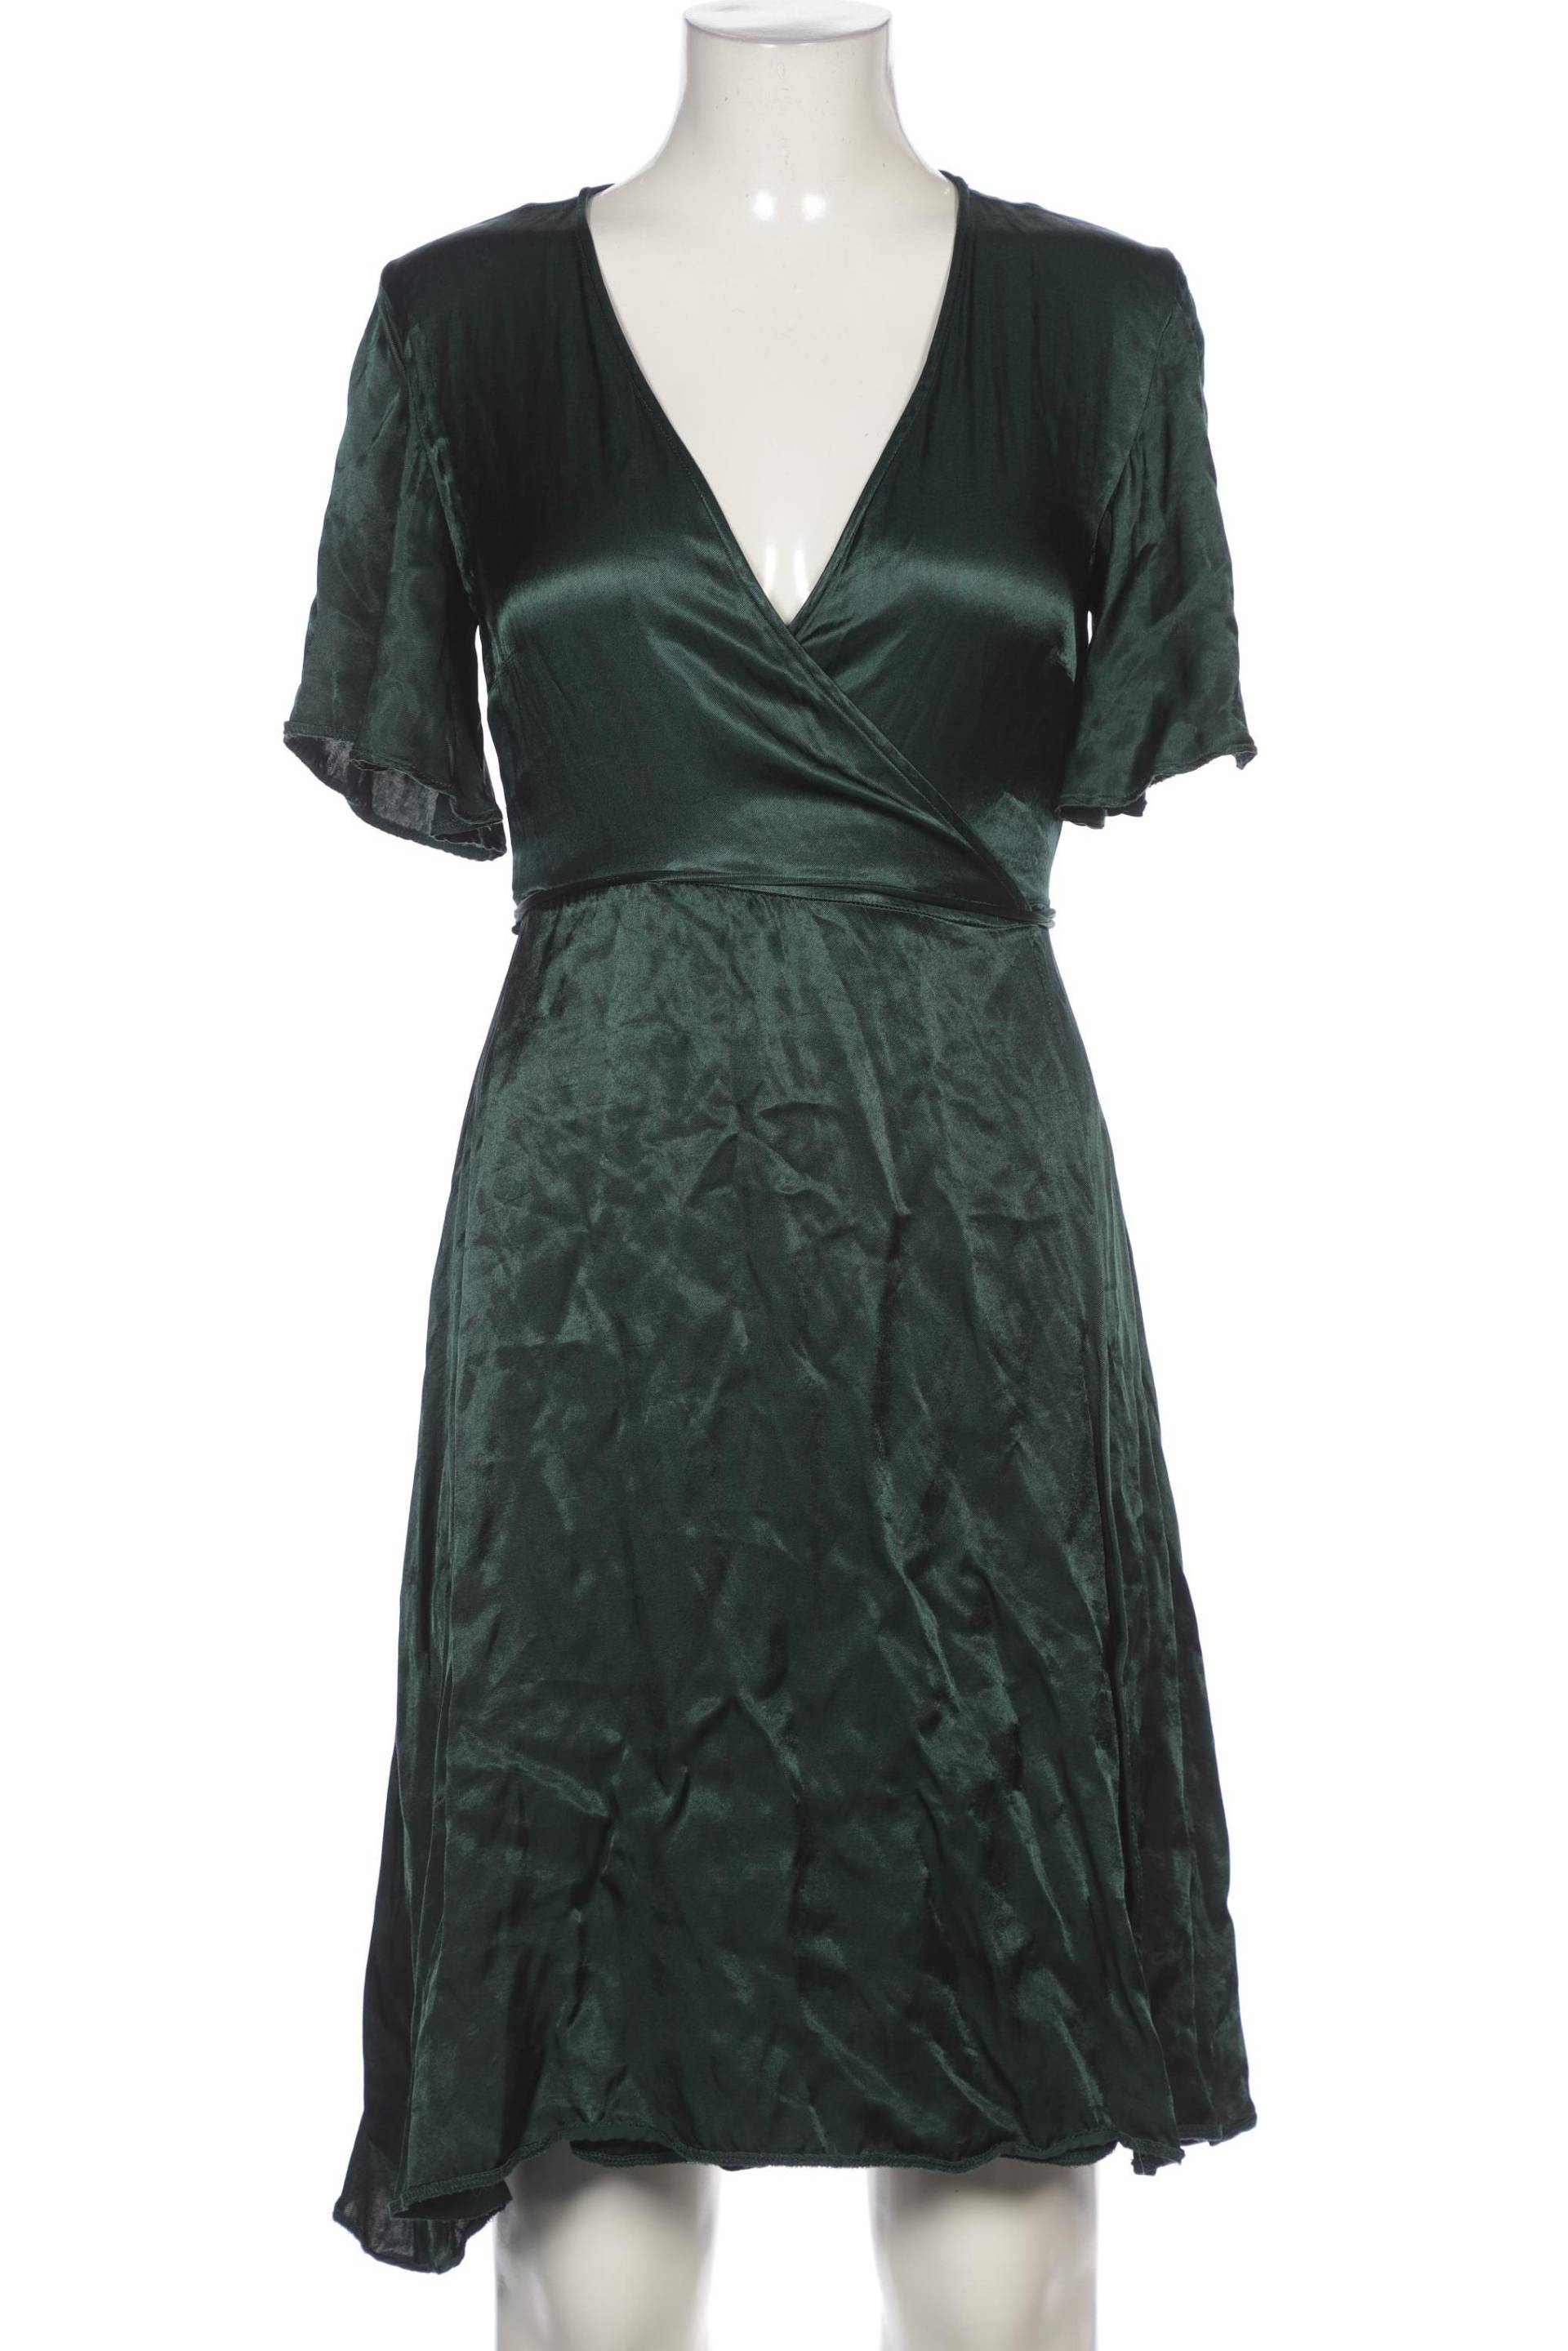 Anna Field Damen Kleid, grün, Gr. 42 von Anna Field